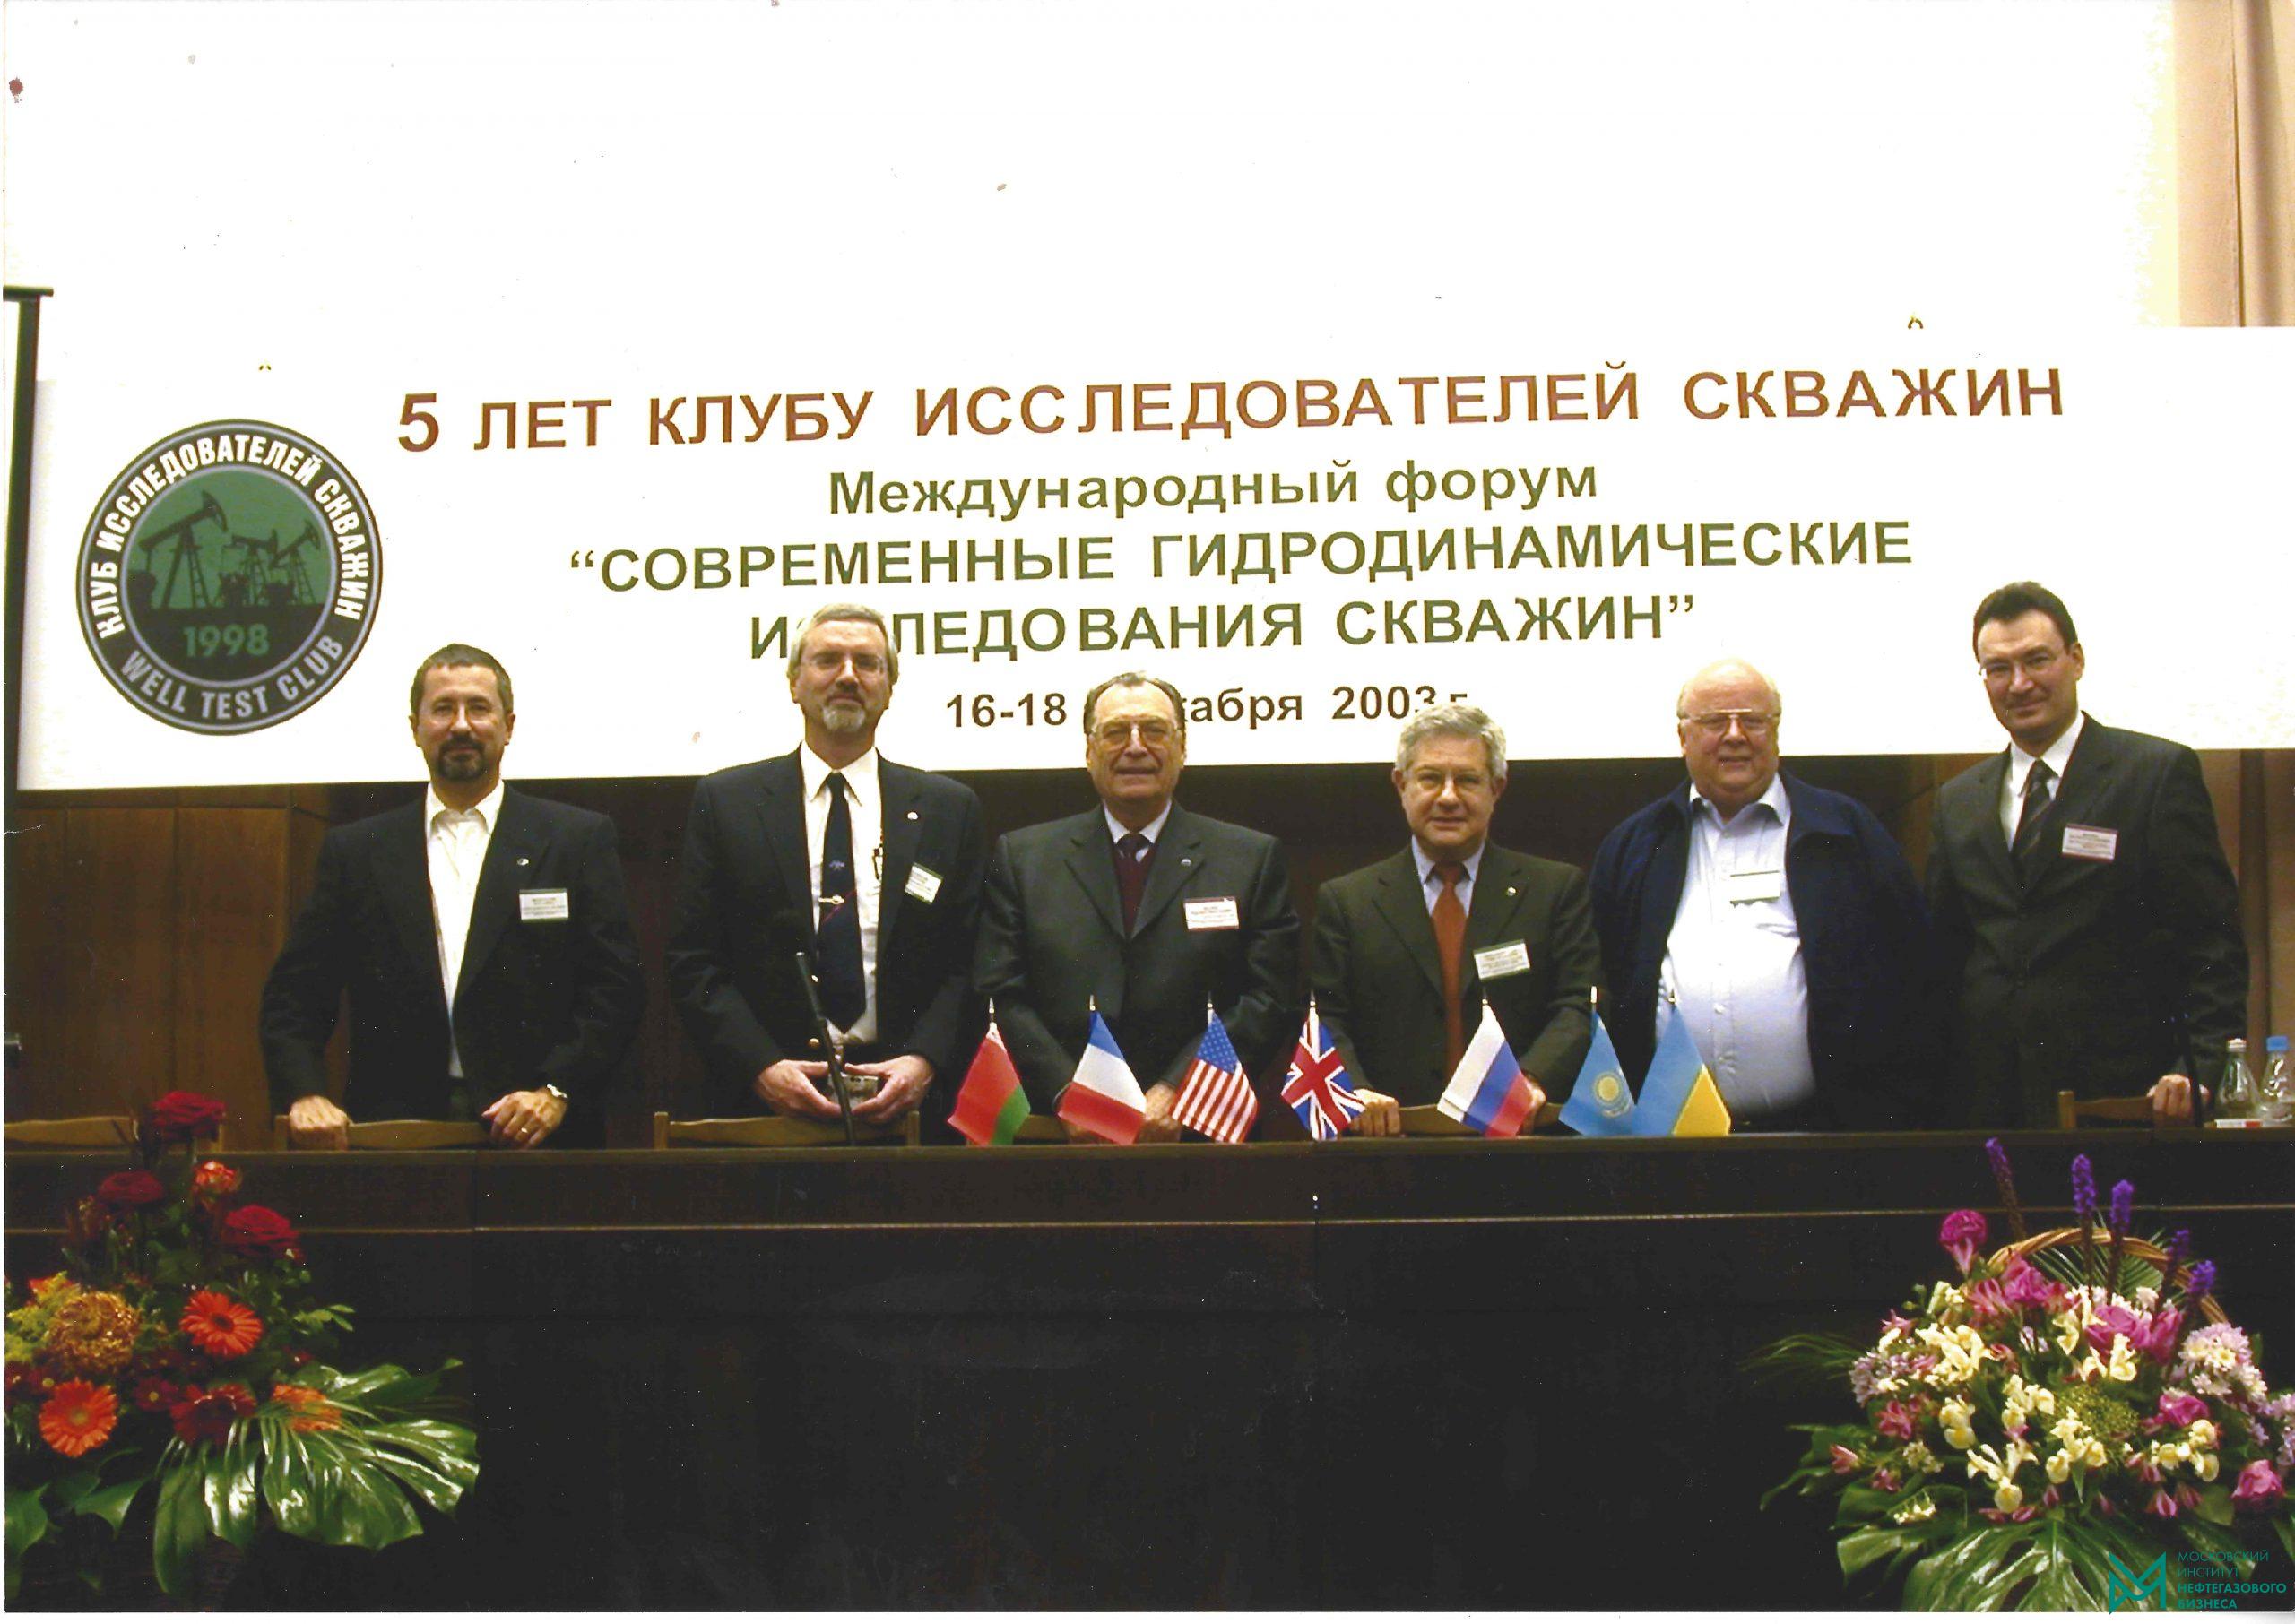 Международный Форум «Современные гидродинамические исследования скважин», 5 лет Клубу исследователей скважин – Москва, 2003